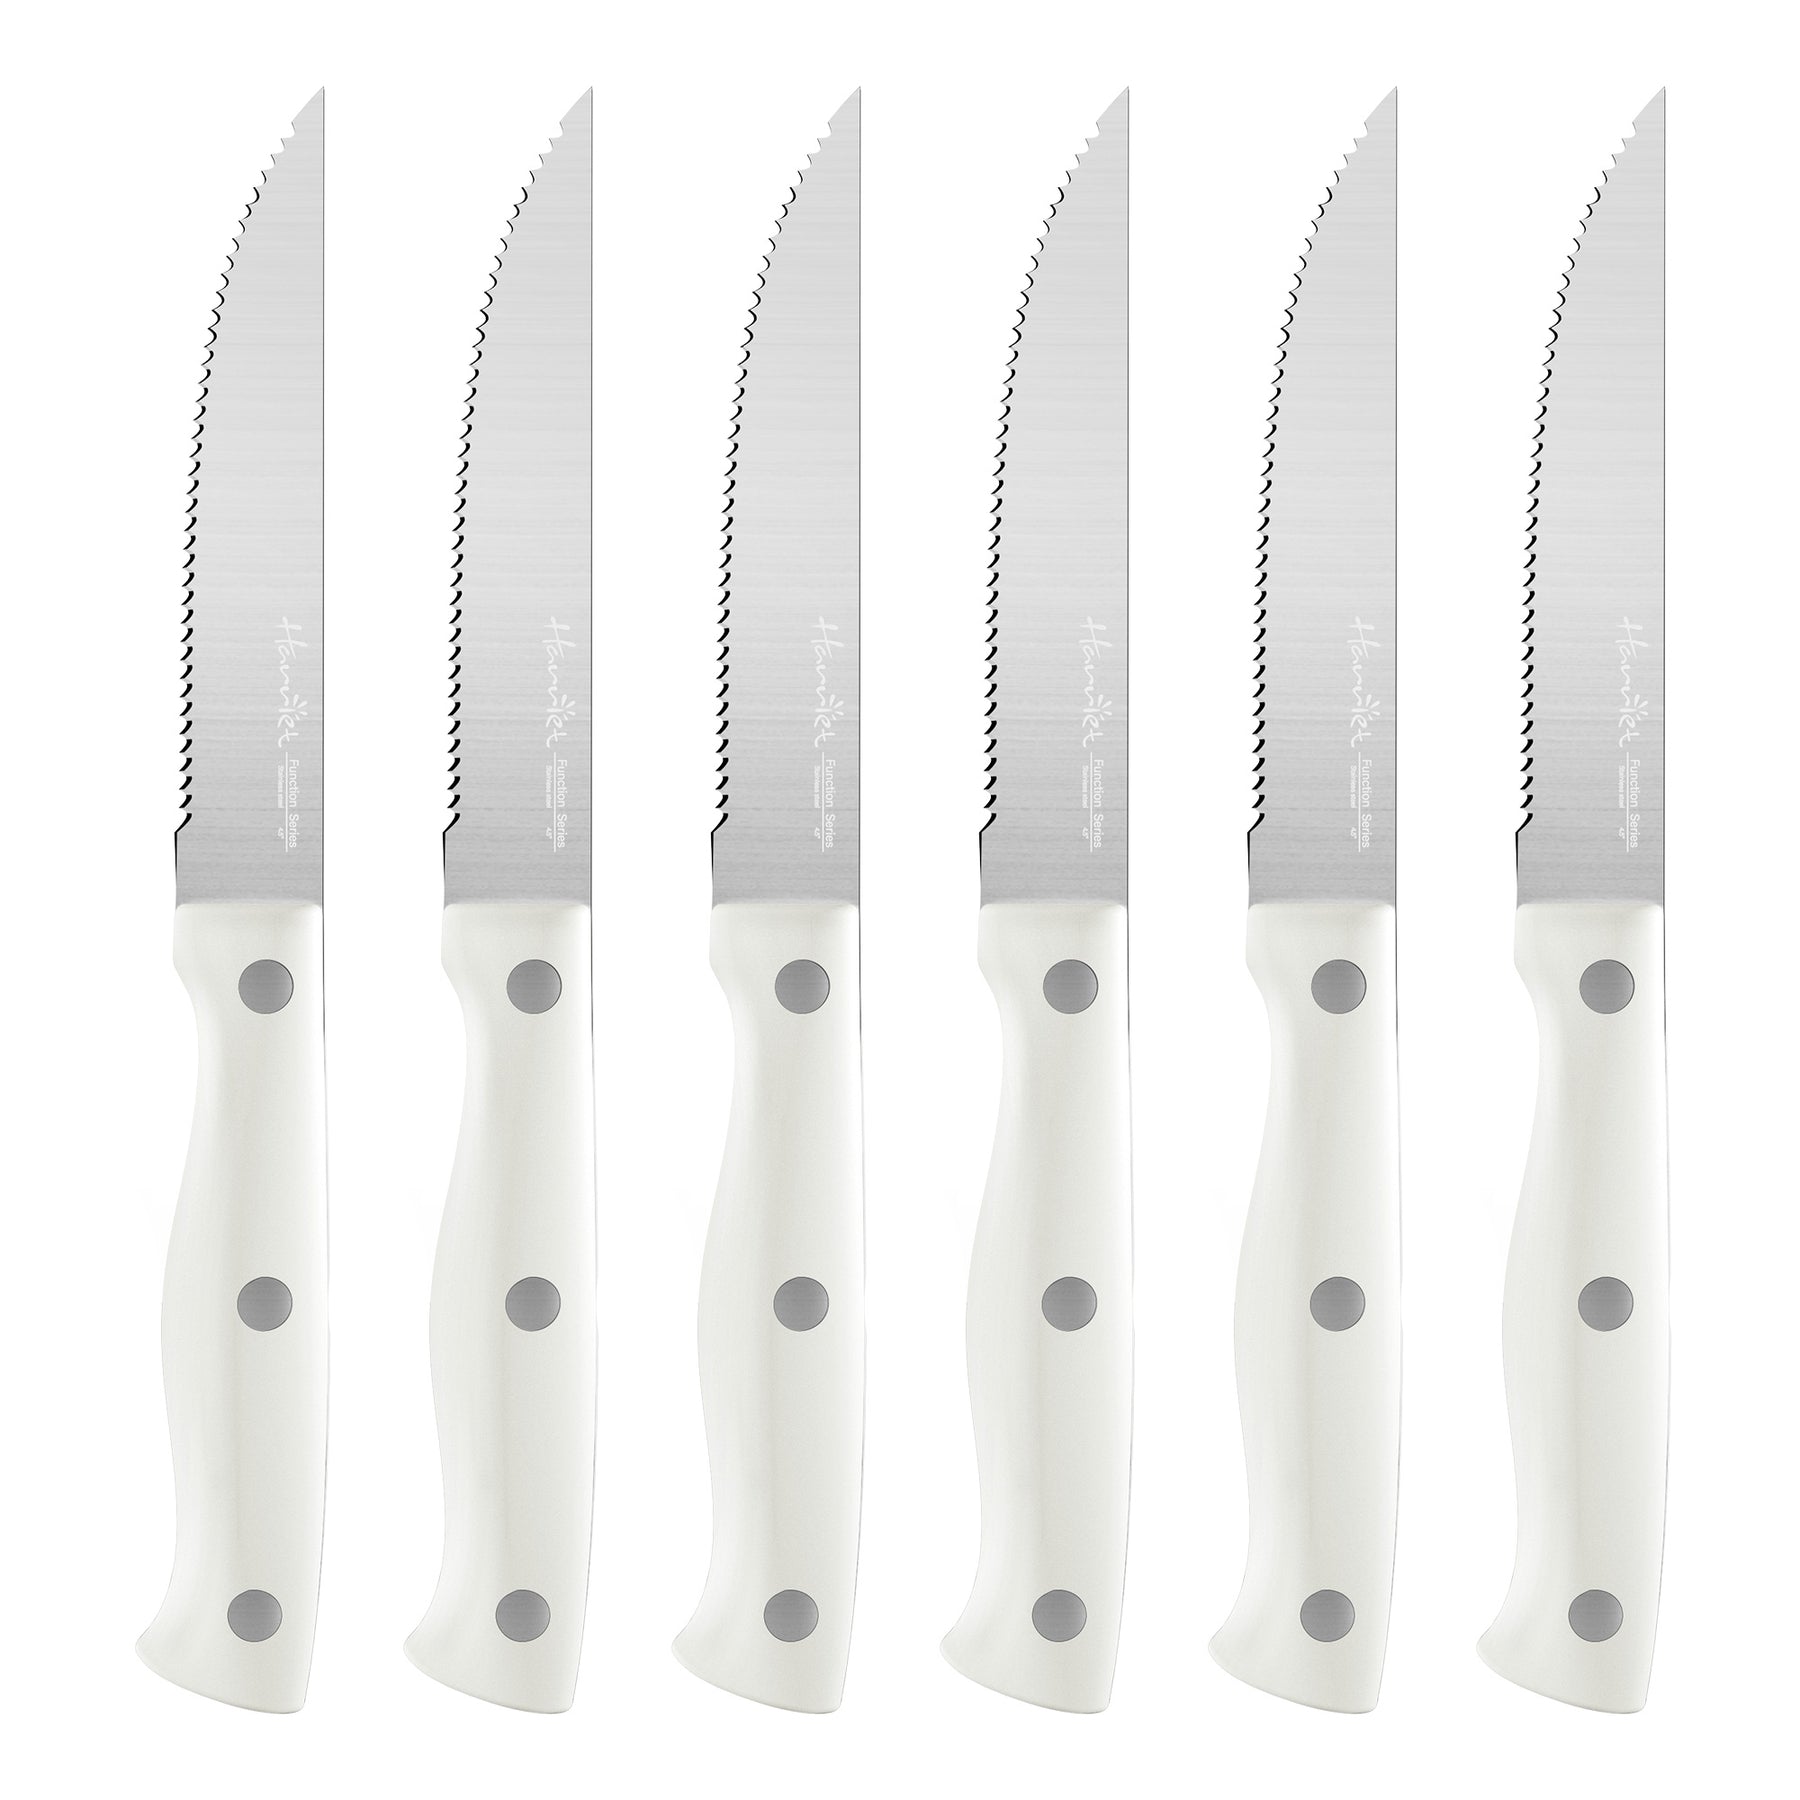 4.5 Steak Knives Set of 6, Premium German Steel Steak Knives with